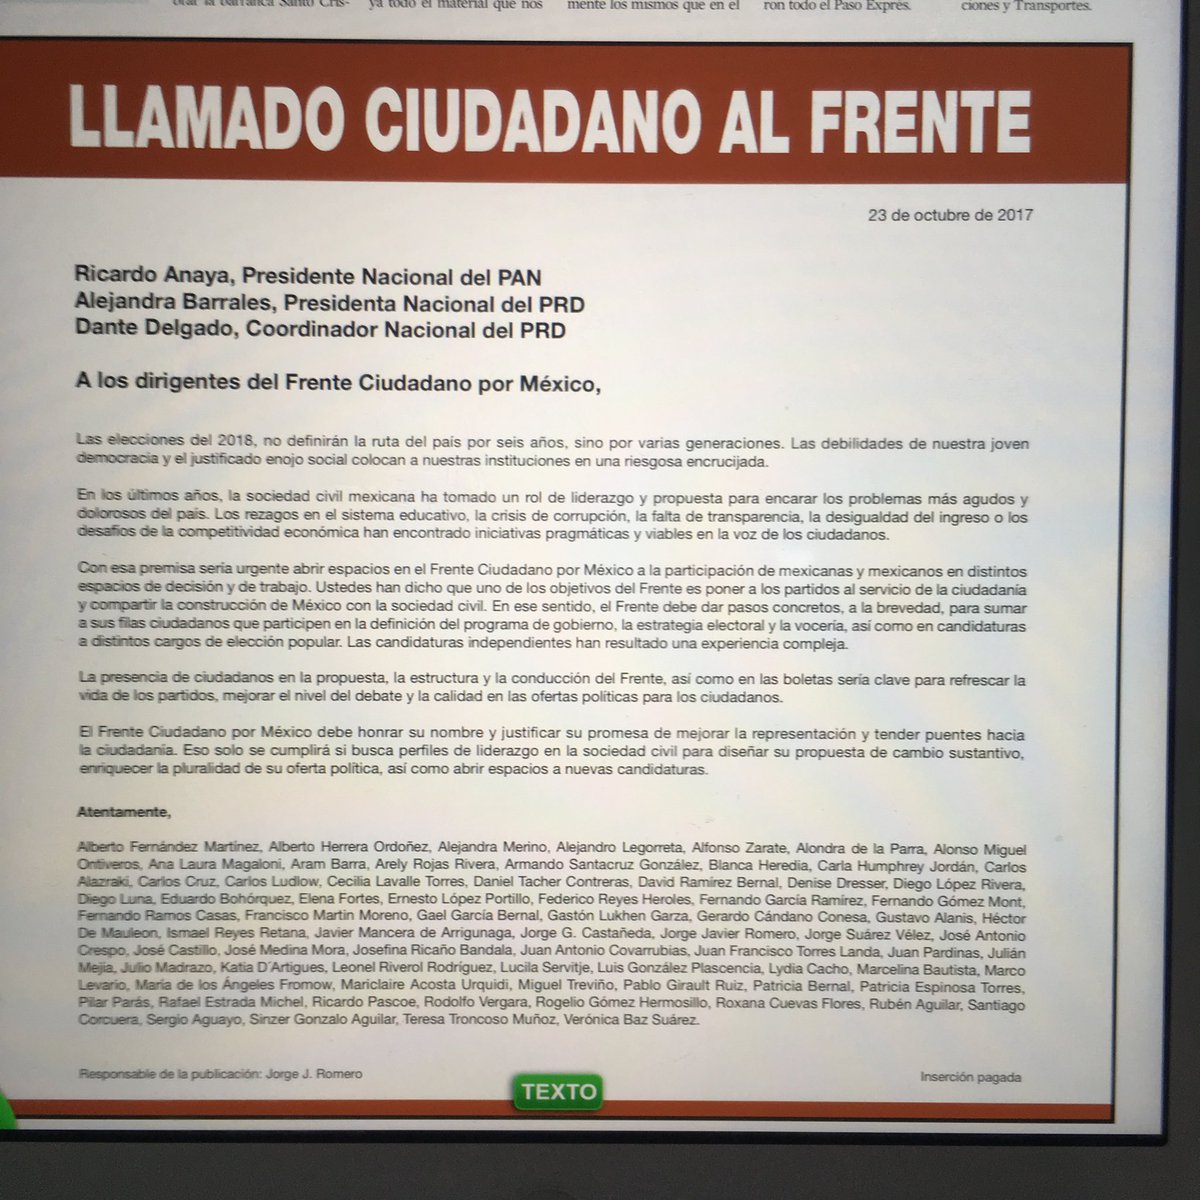 LÍDERES DE LA SOCIEDAD CIVIL PIDEN INCLUSIÓN AL FRENTE CIUDADANO POR MÉXICO 